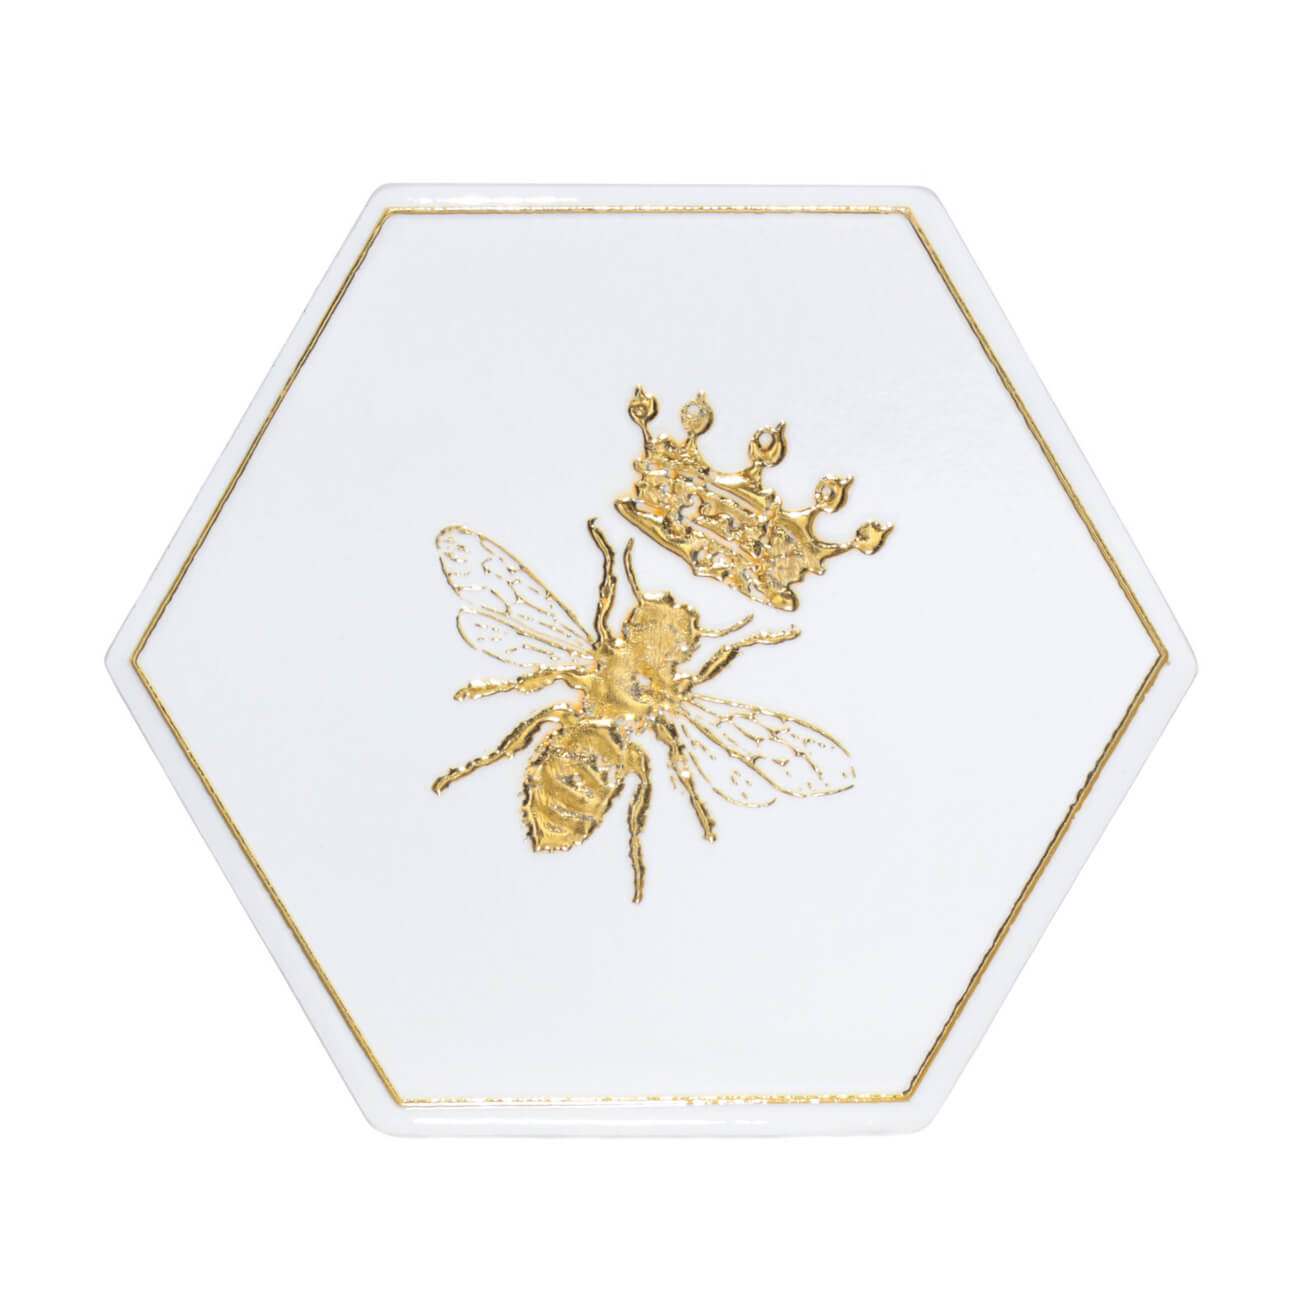 Подставка под кружку, 11 см, керамика/пробка, шестиугольная, белая, Королевская пчела, Honey царь соломон и пчела